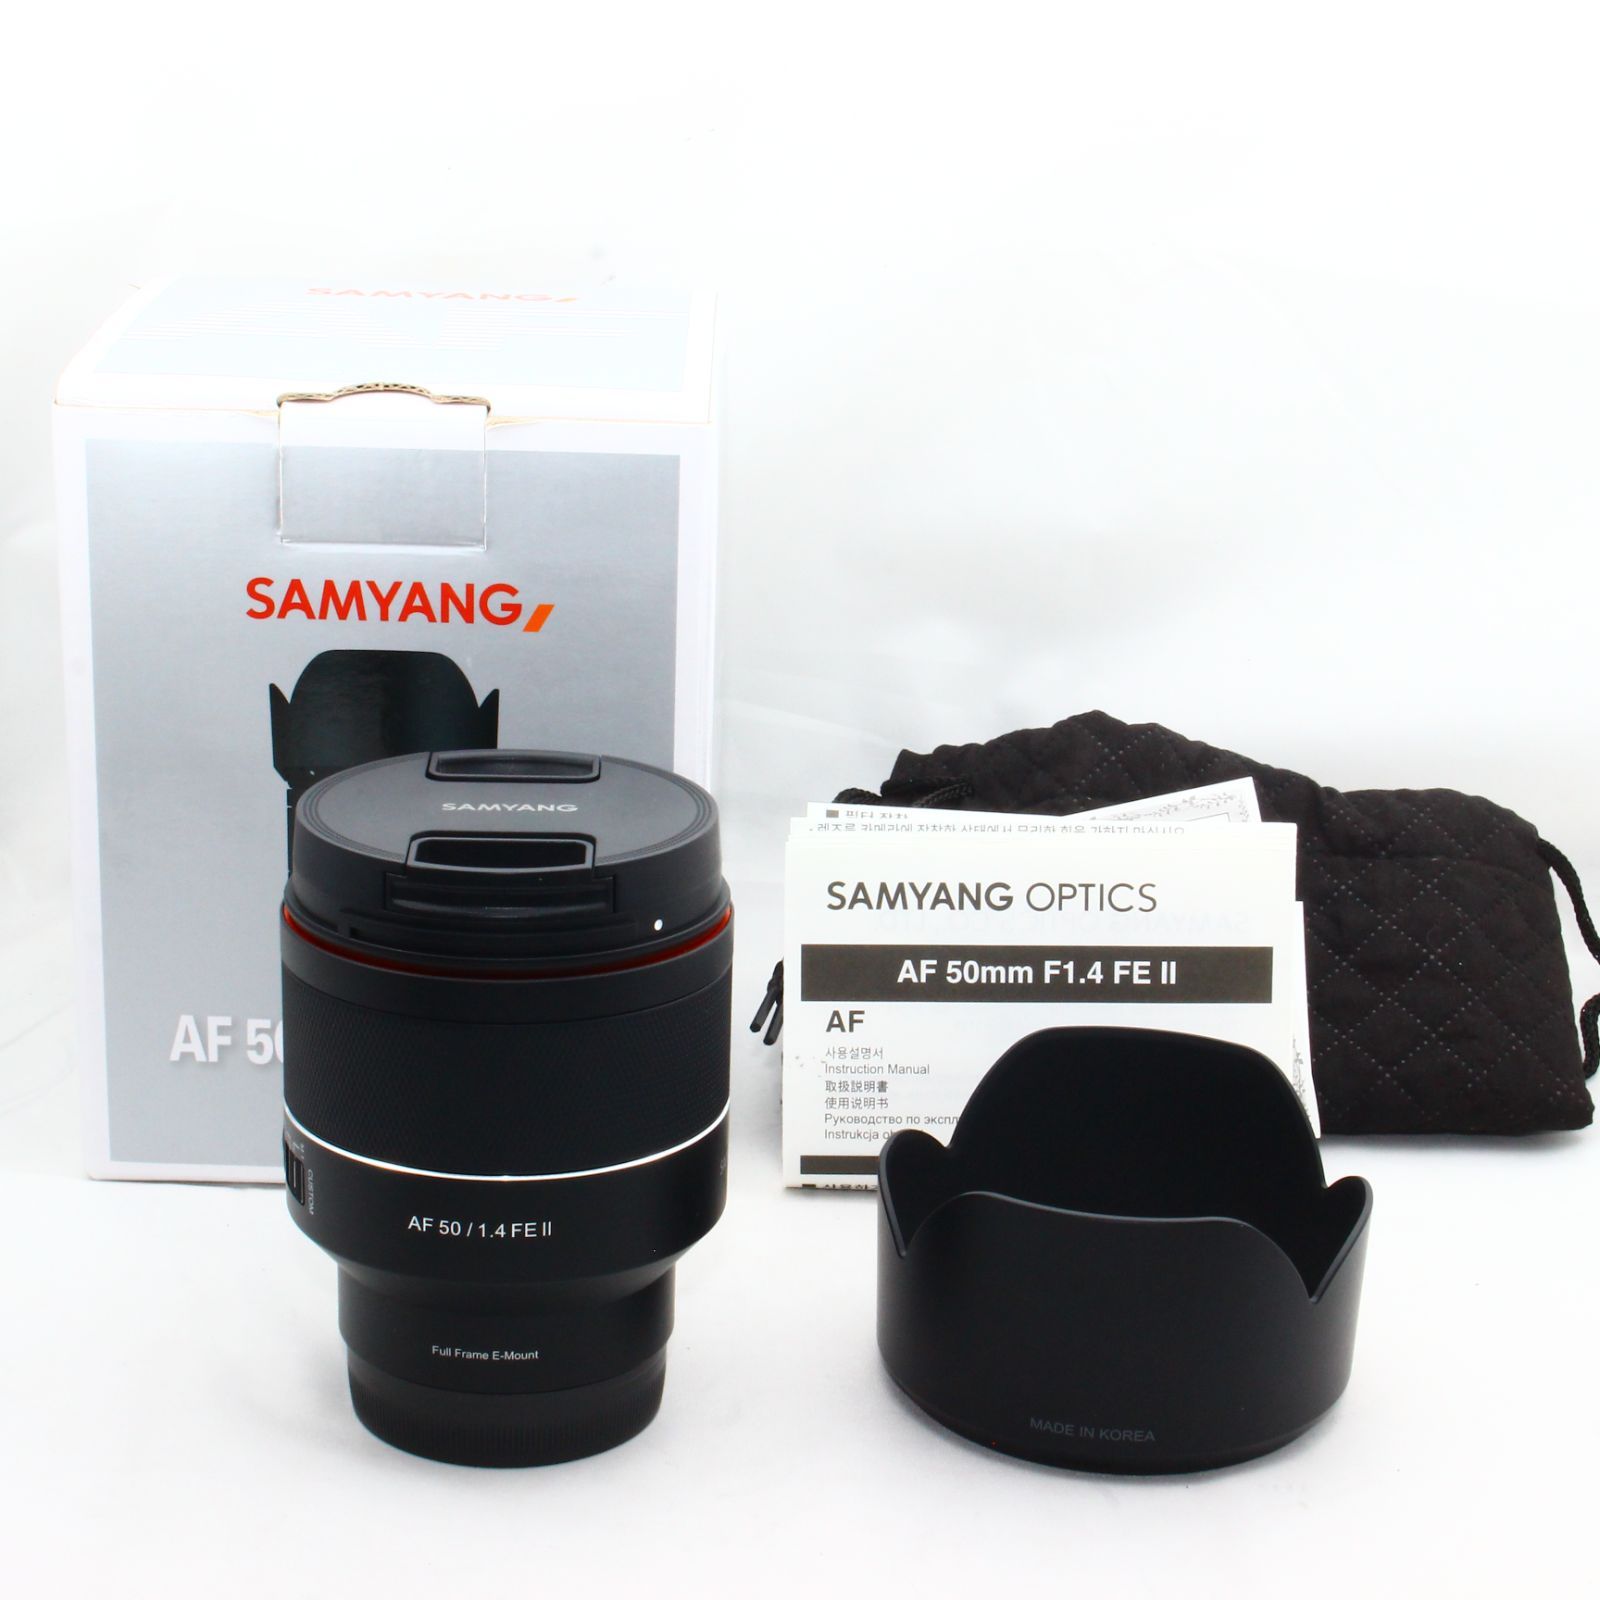 SAMYANG 単焦点レンズ F1.4/50㎜ AS UMC ソニーEマウントレンズ - カメラ、光学機器